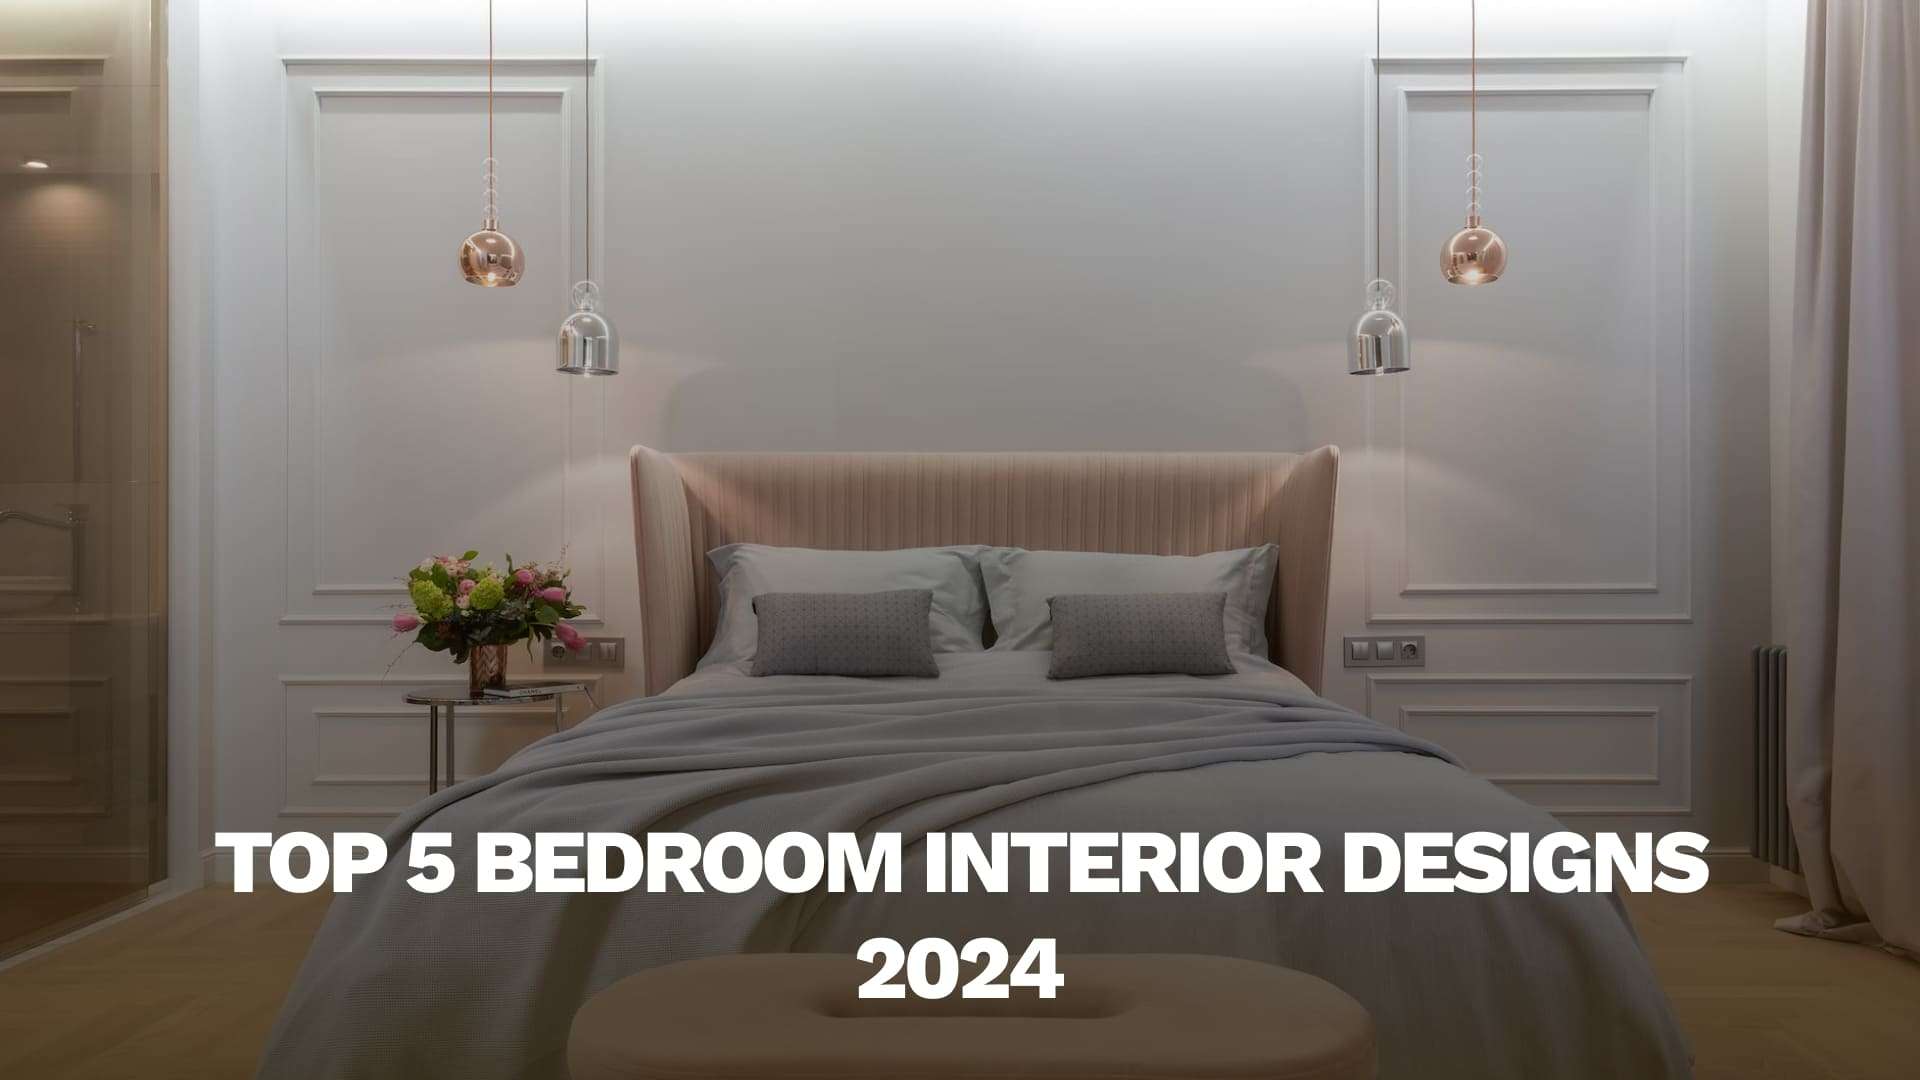 Top 5 Bedroom Interior Designs 2024